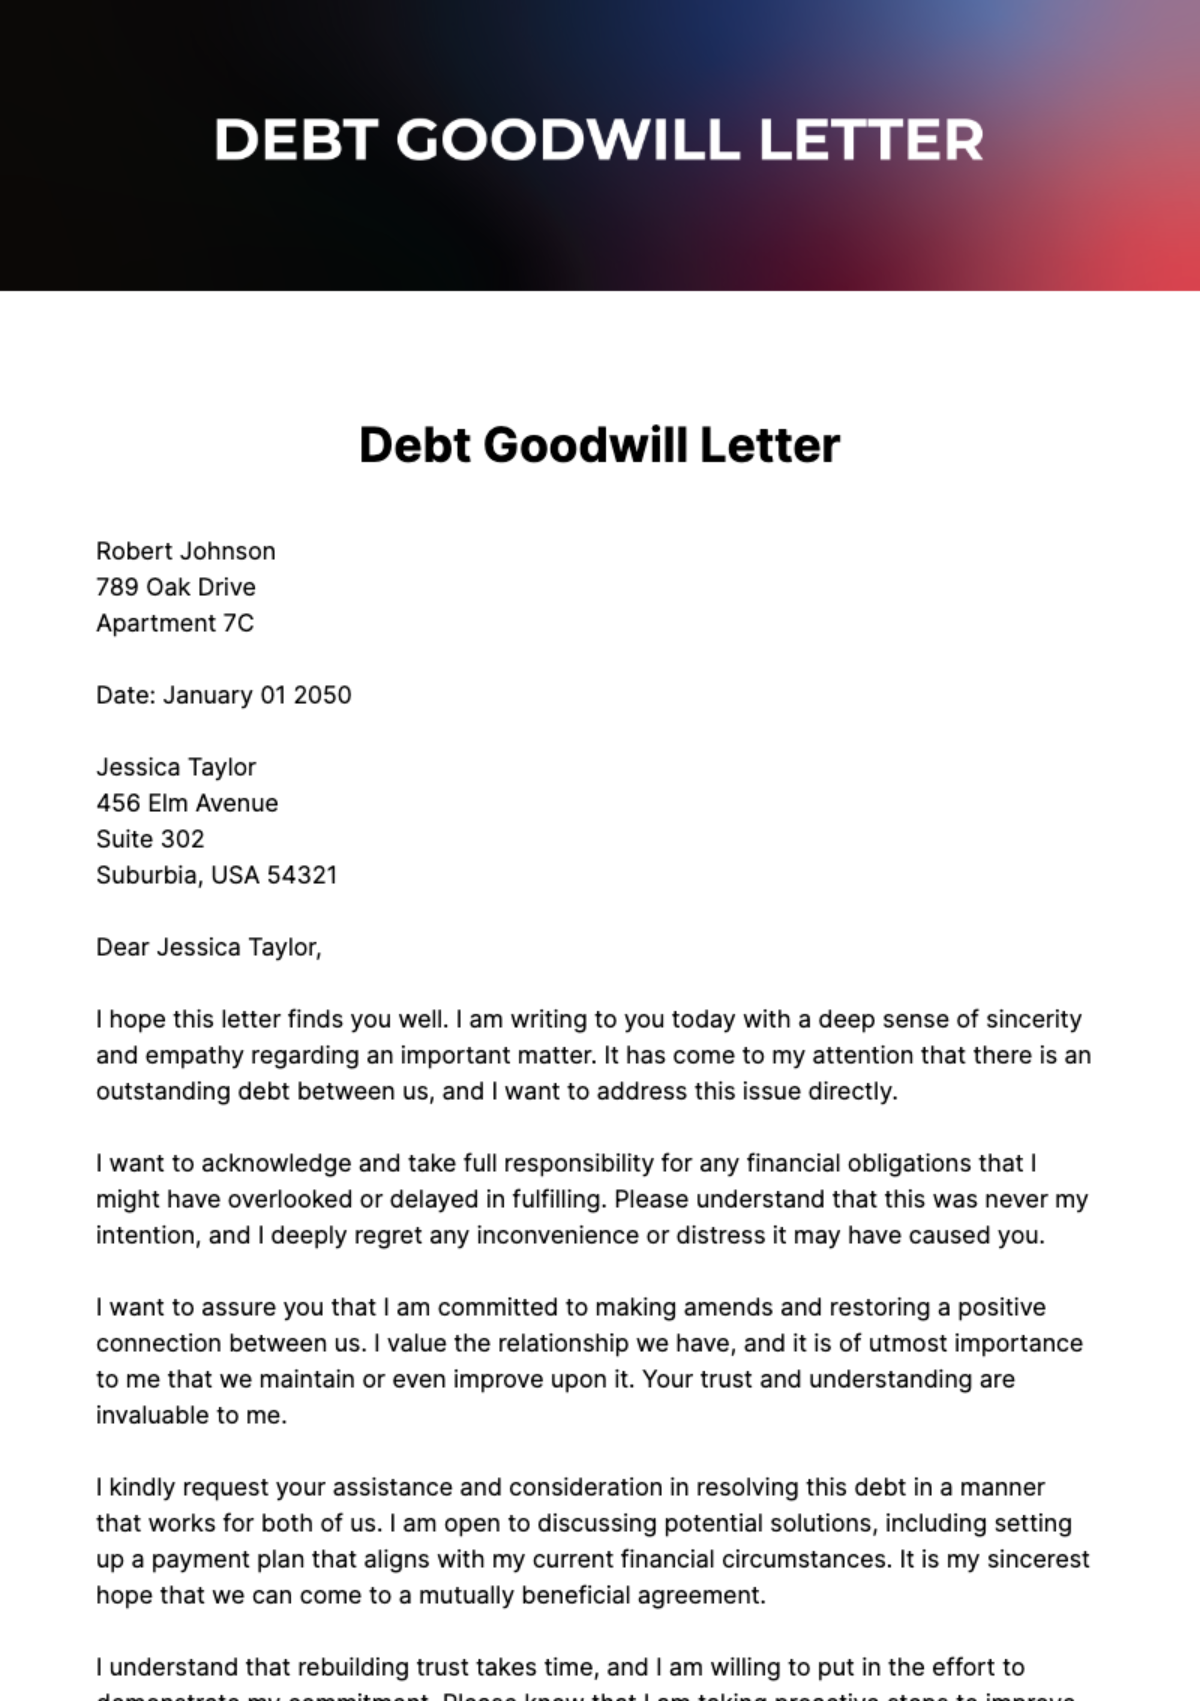 Debt Goodwill Letter Template